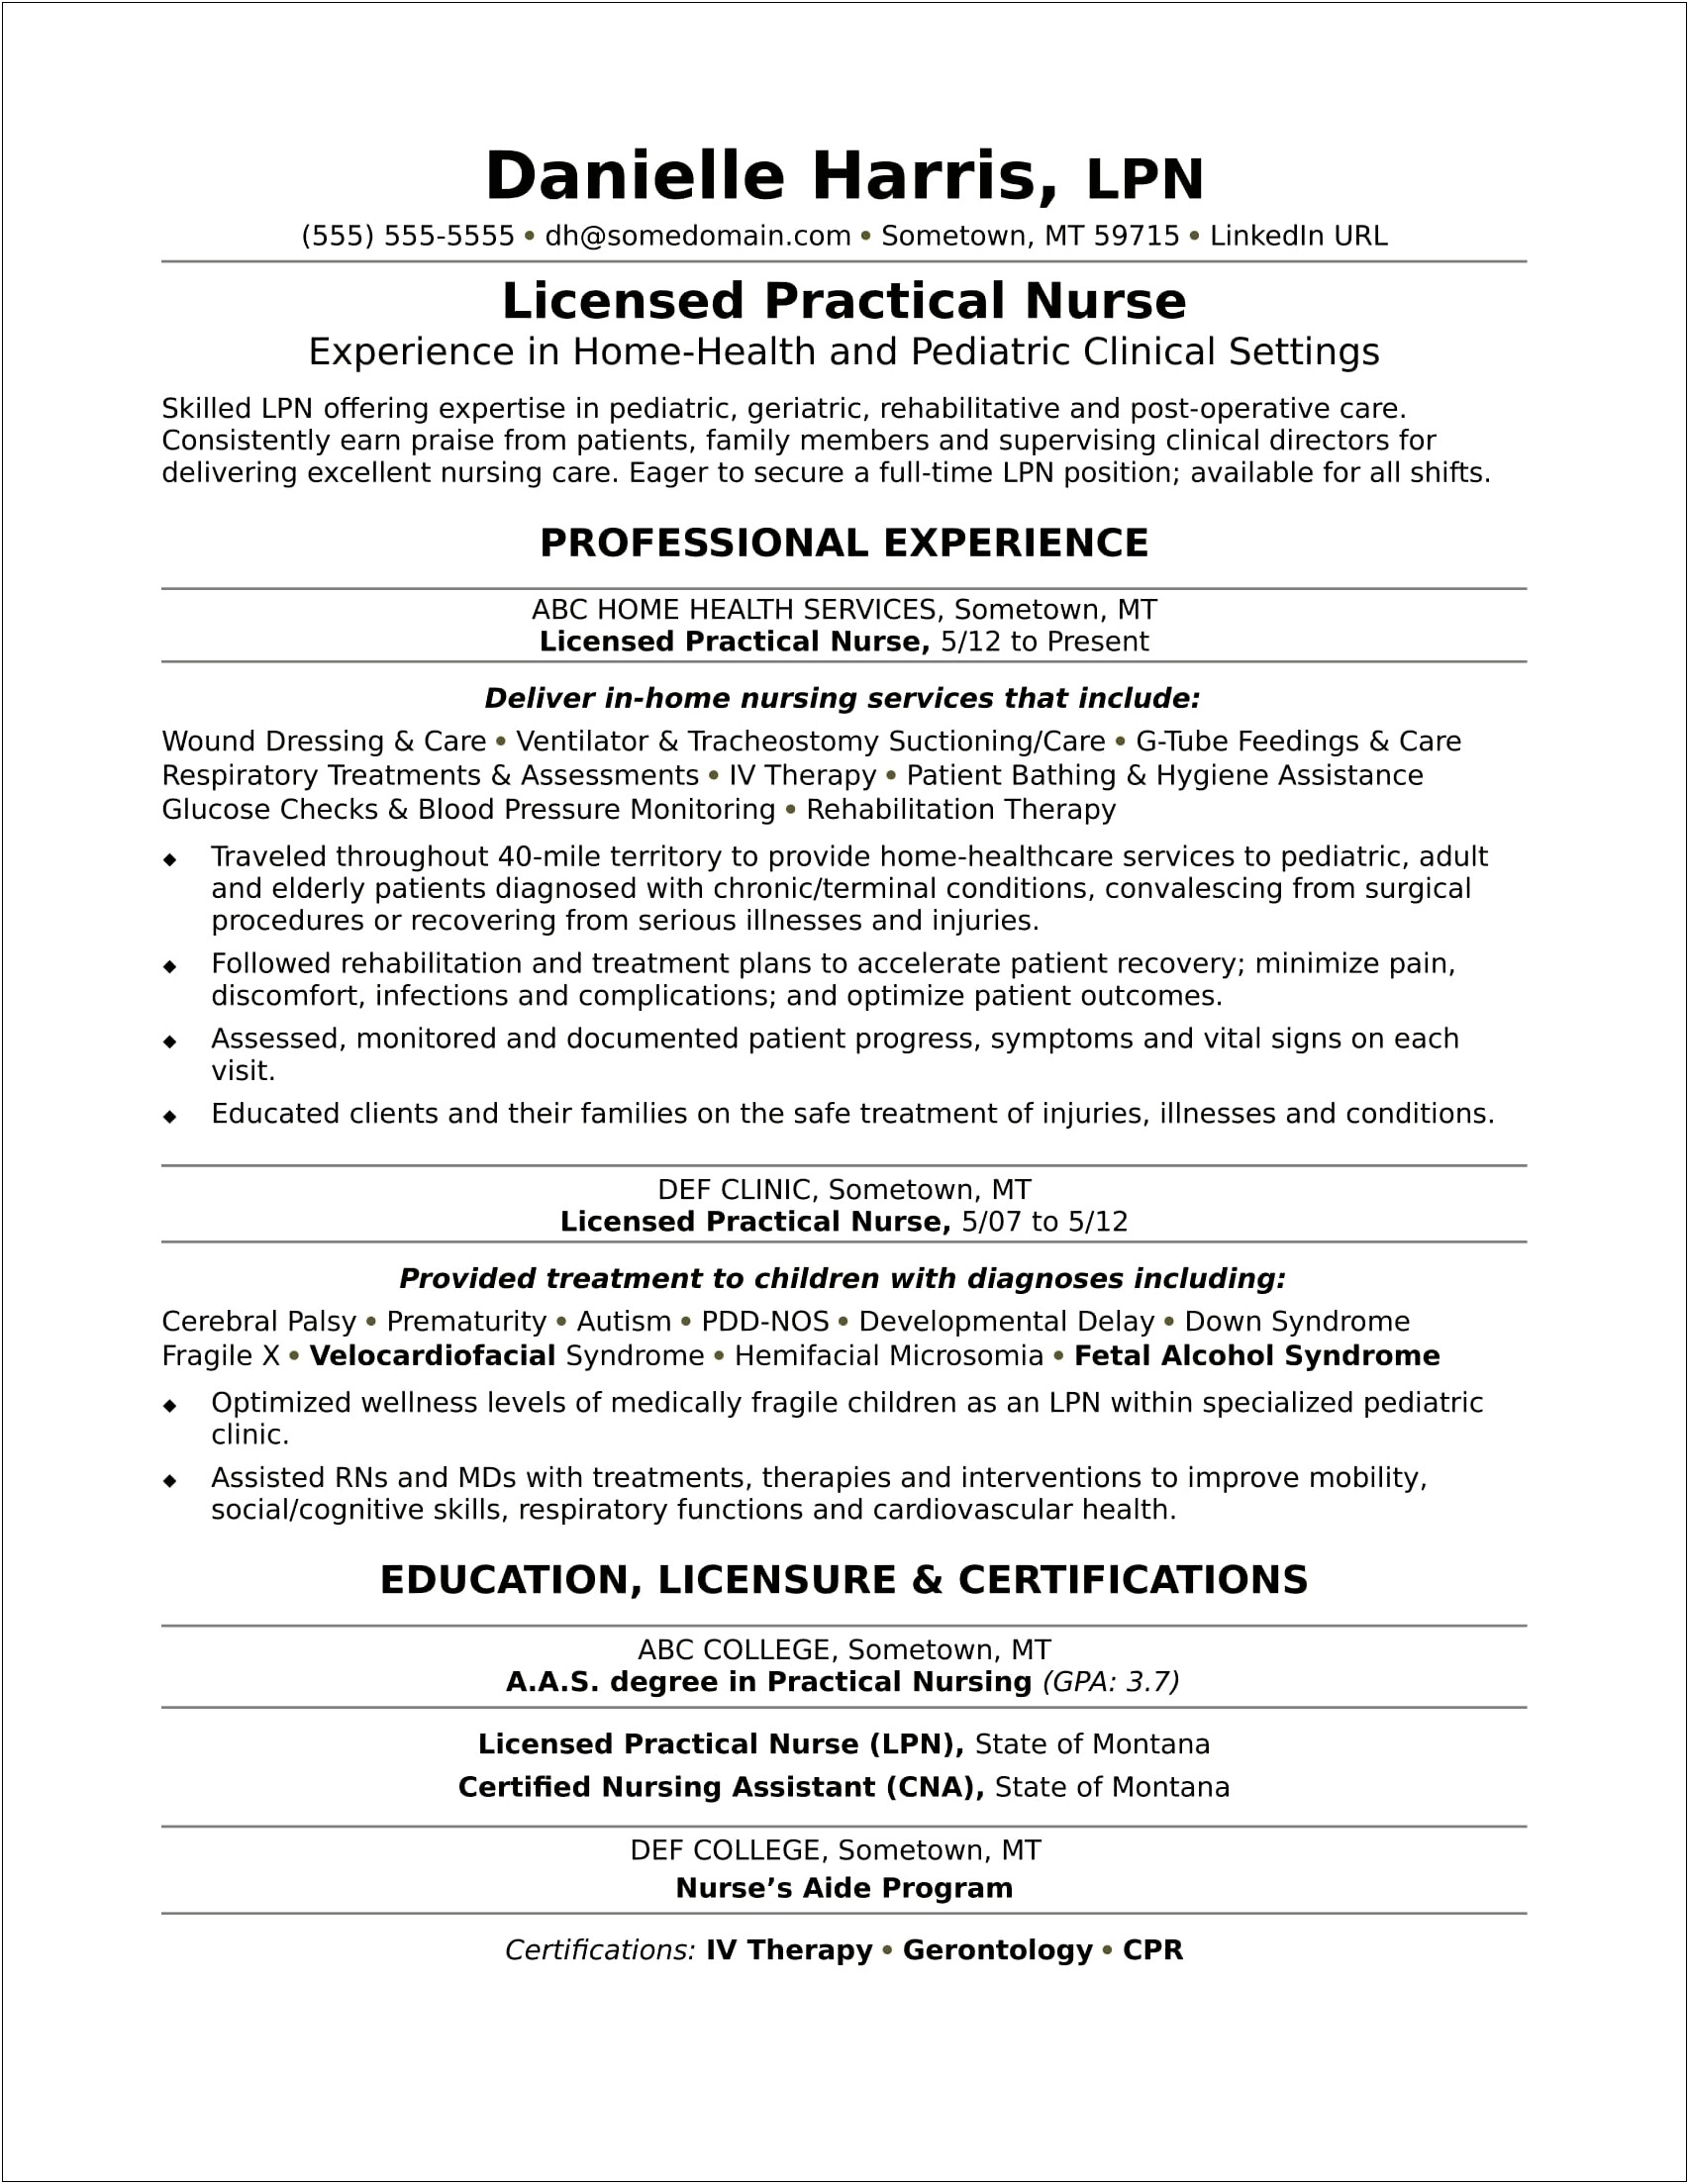 Resume Skills Sample For Nurses